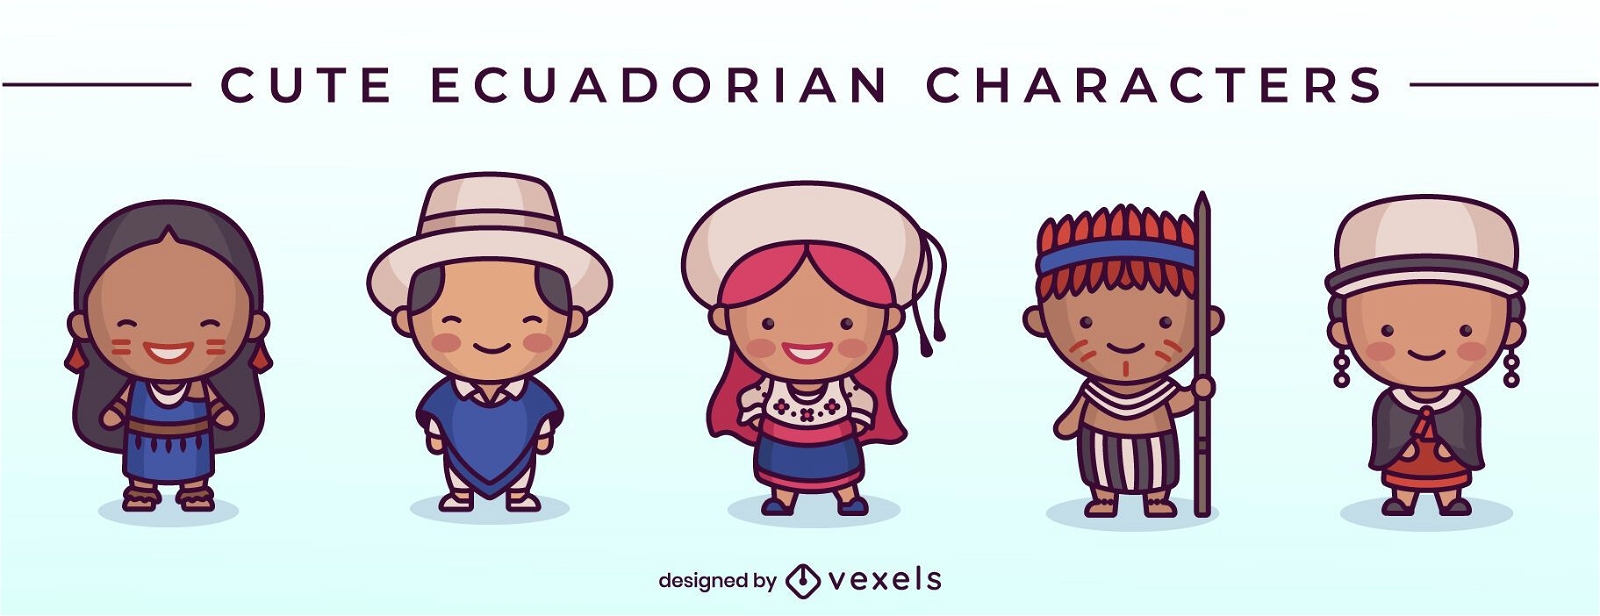 Cute ecuadorian character set